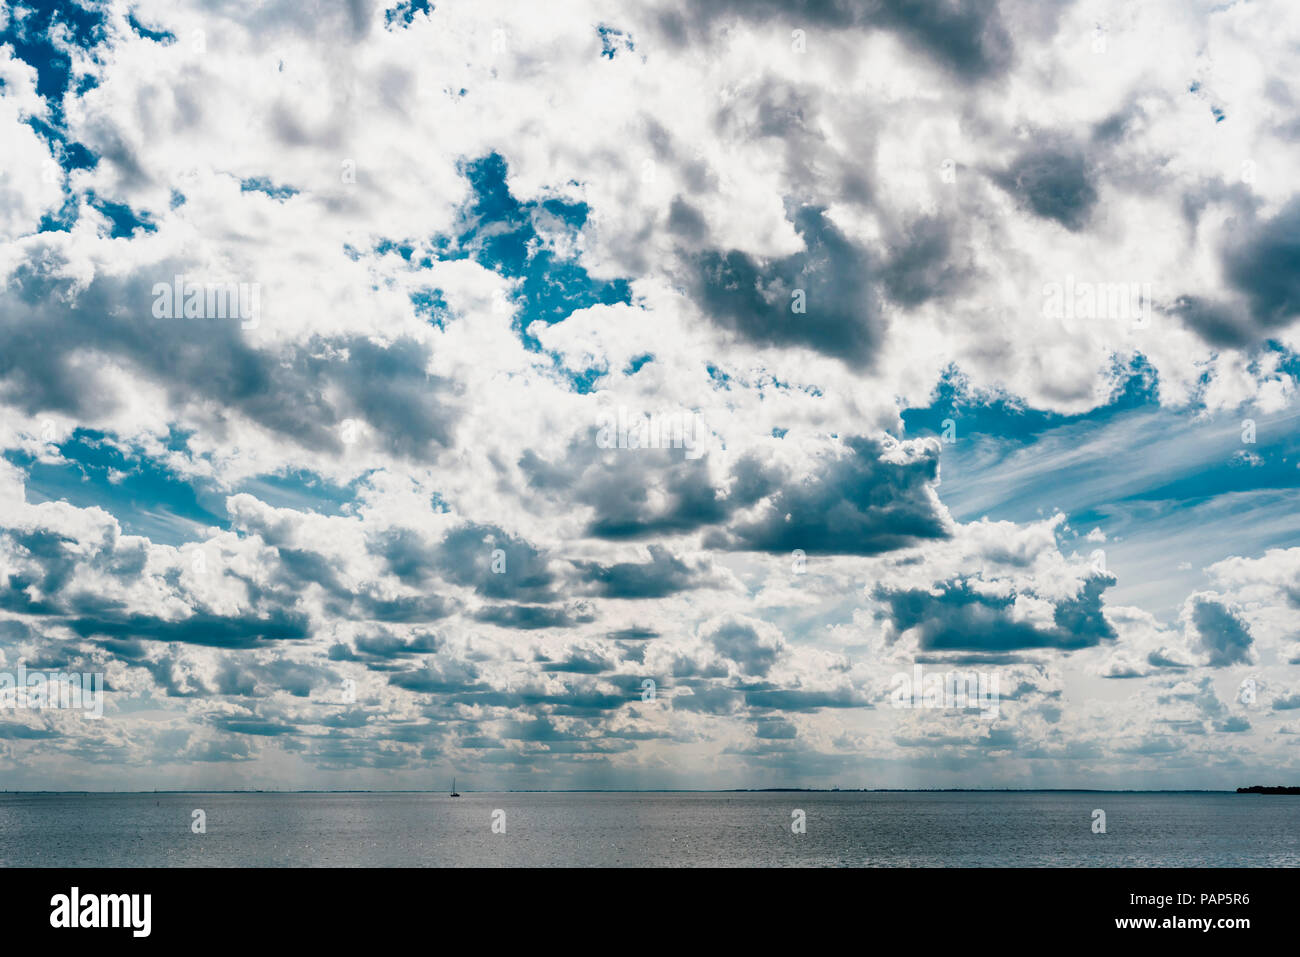 L'Allemagne, sous la mer Baltique Ruegen, ciel nuageux Banque D'Images